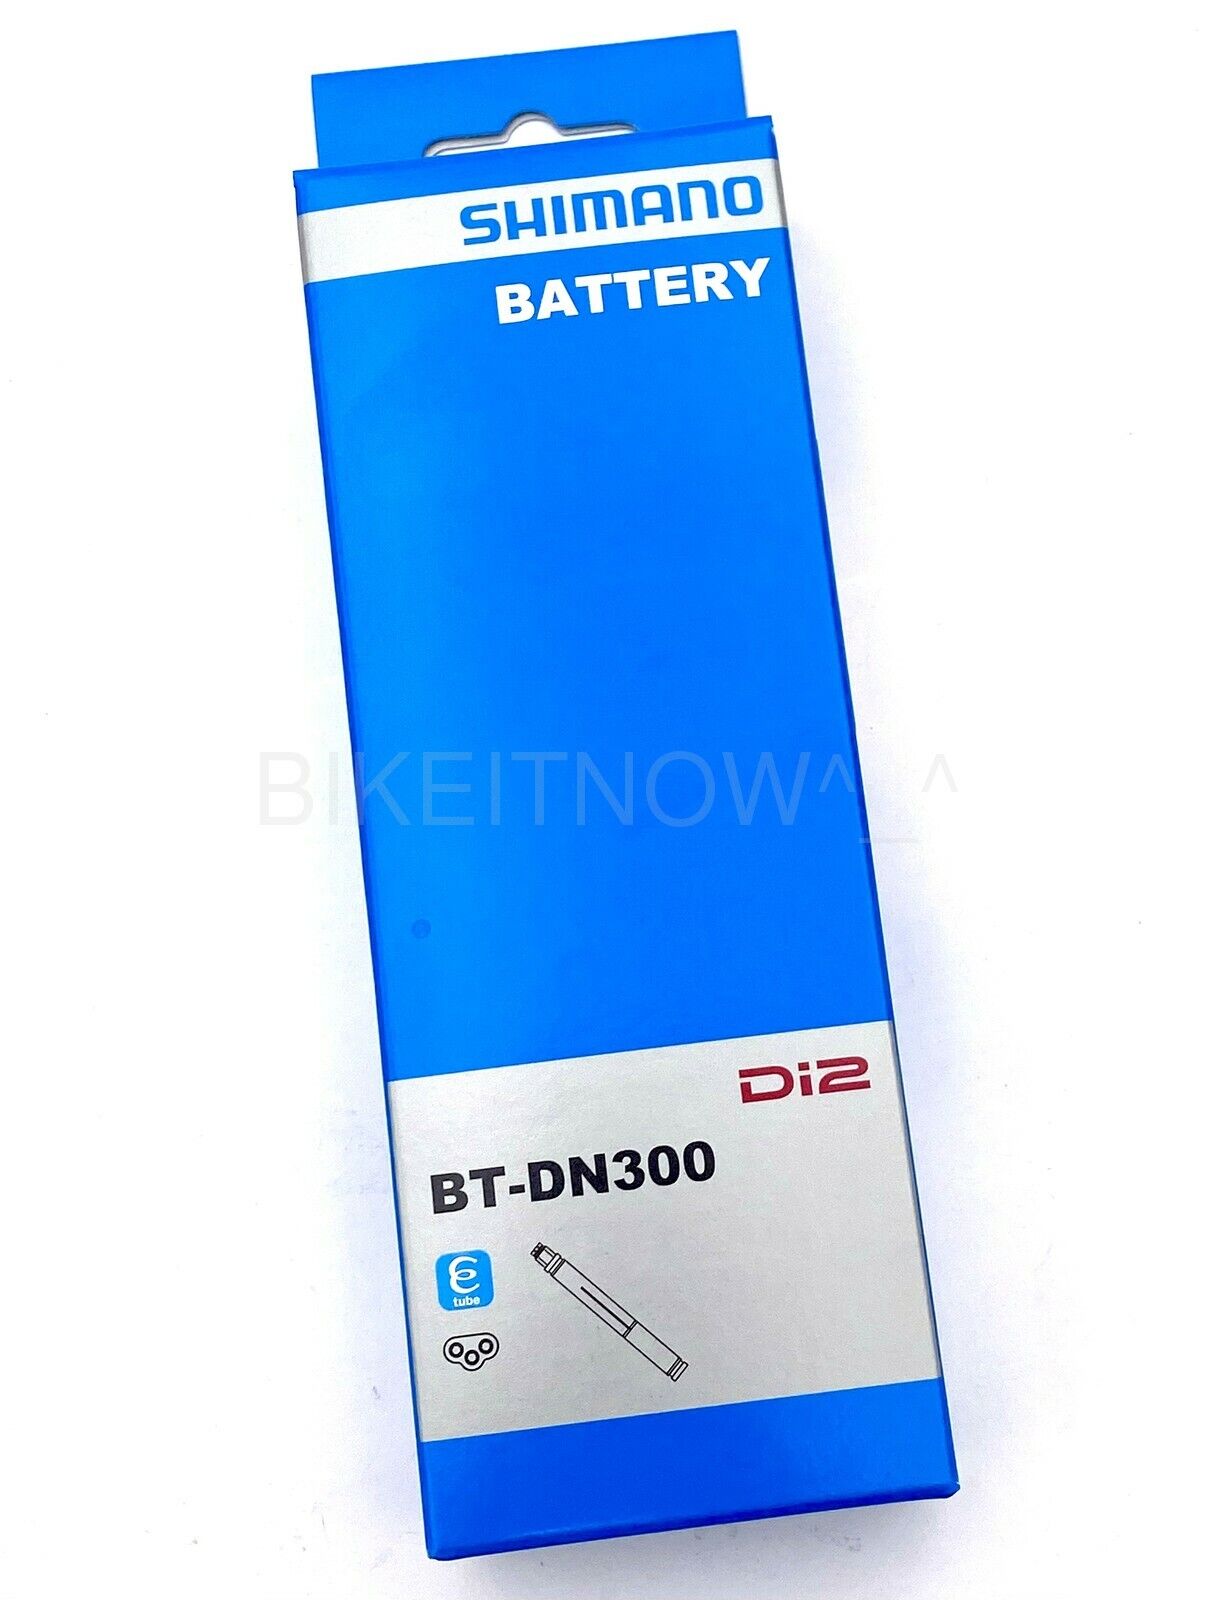 Shimano BT-DN300 Di2 Built-in Battery 3 SD300 Port BTDN300 for Dura-Ace  Ultegra